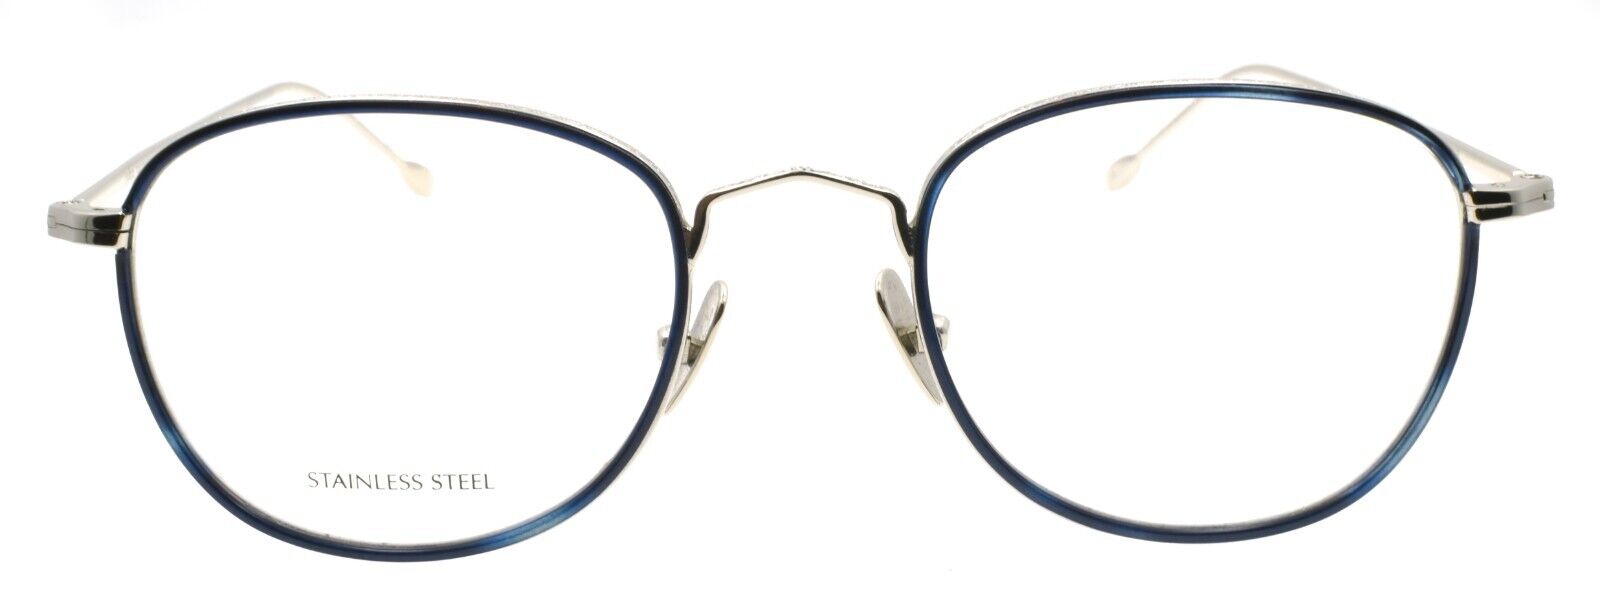 2-John Varvatos V178 Men's Eyeglasses Frames 49-21-145 Blue / Silver Japan-751286329964-IKSpecs